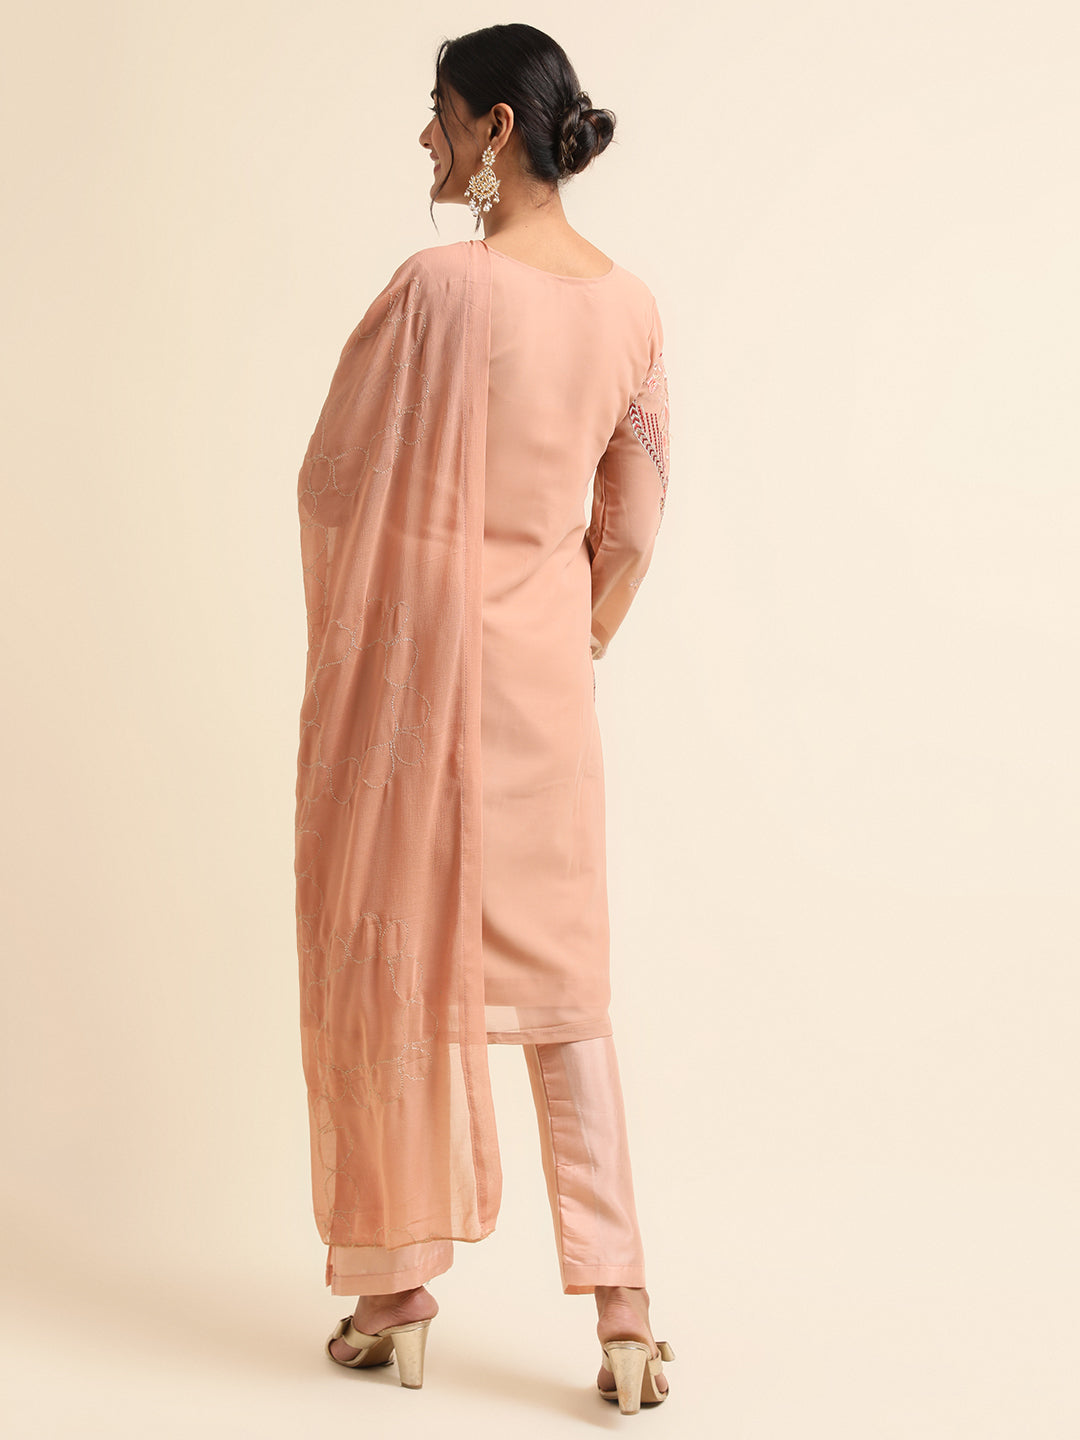 Elegant Peach Pakistani Suit Design